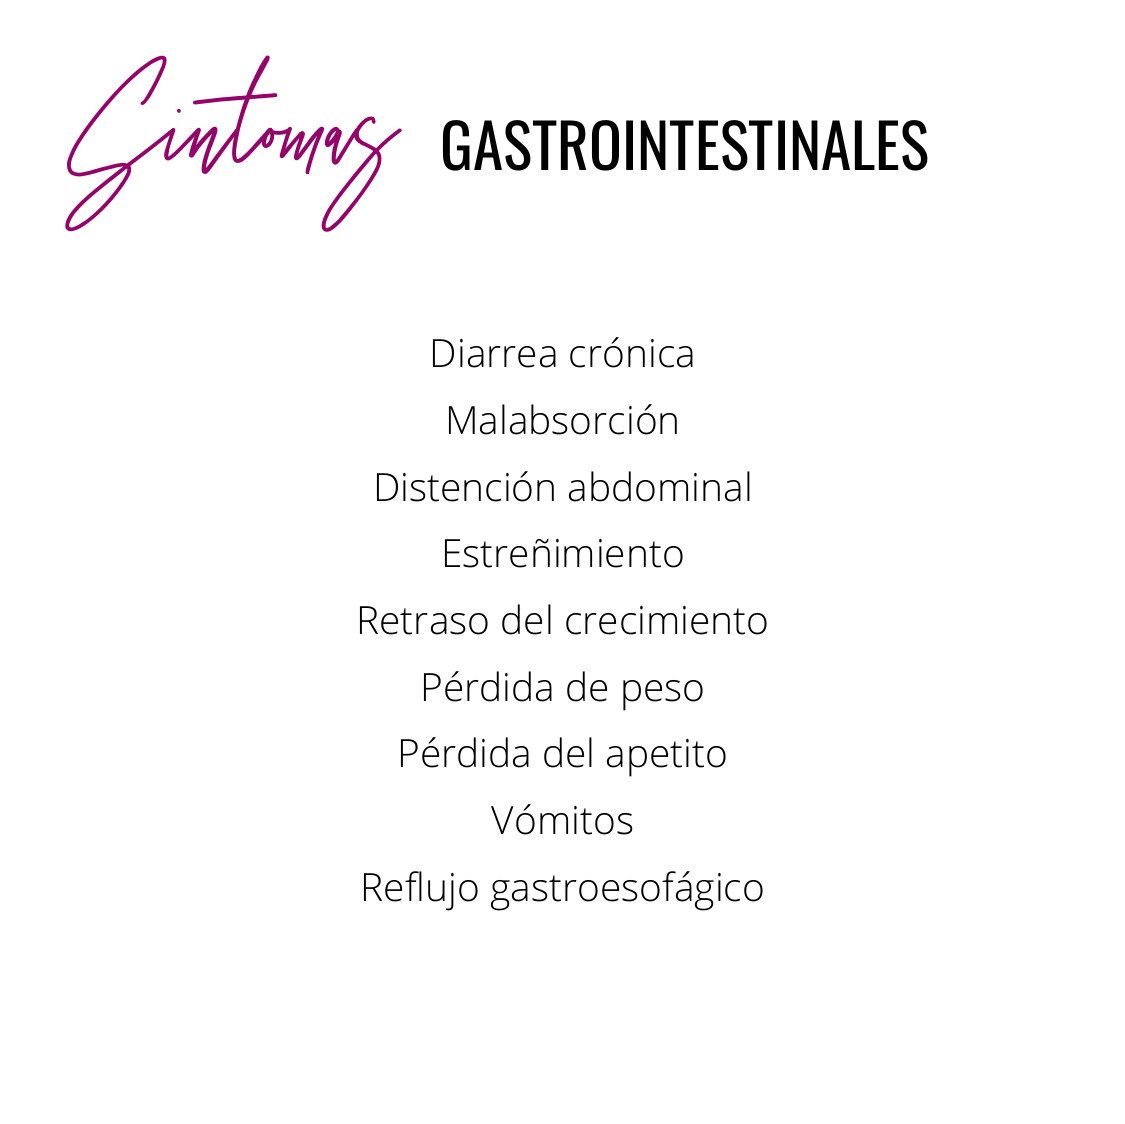 síntomas gastrointestinales enfermedad celiaca